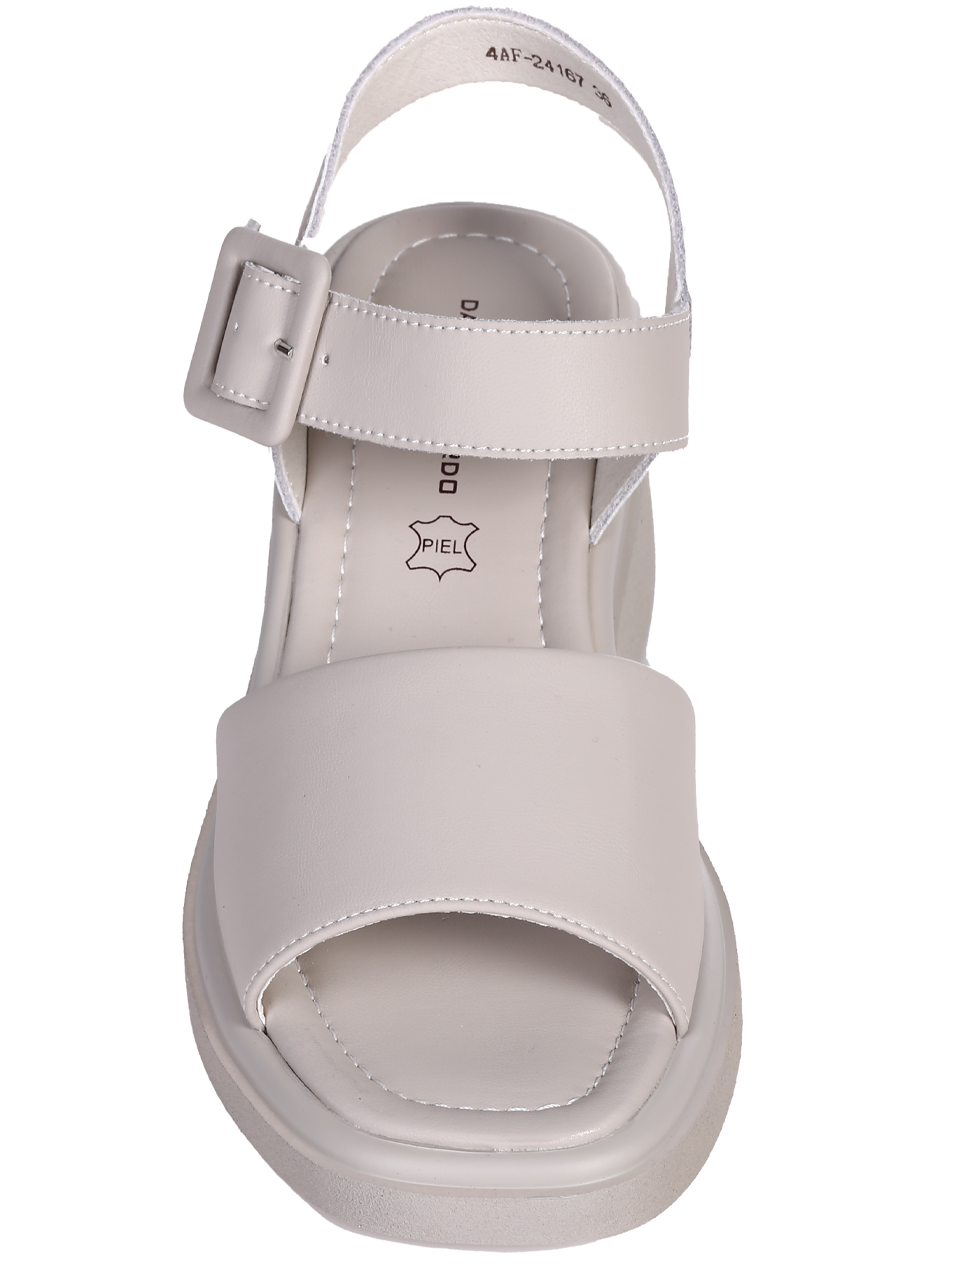 Ежедневни дамски сандали на платформа в сиво 4AF-24167 grey